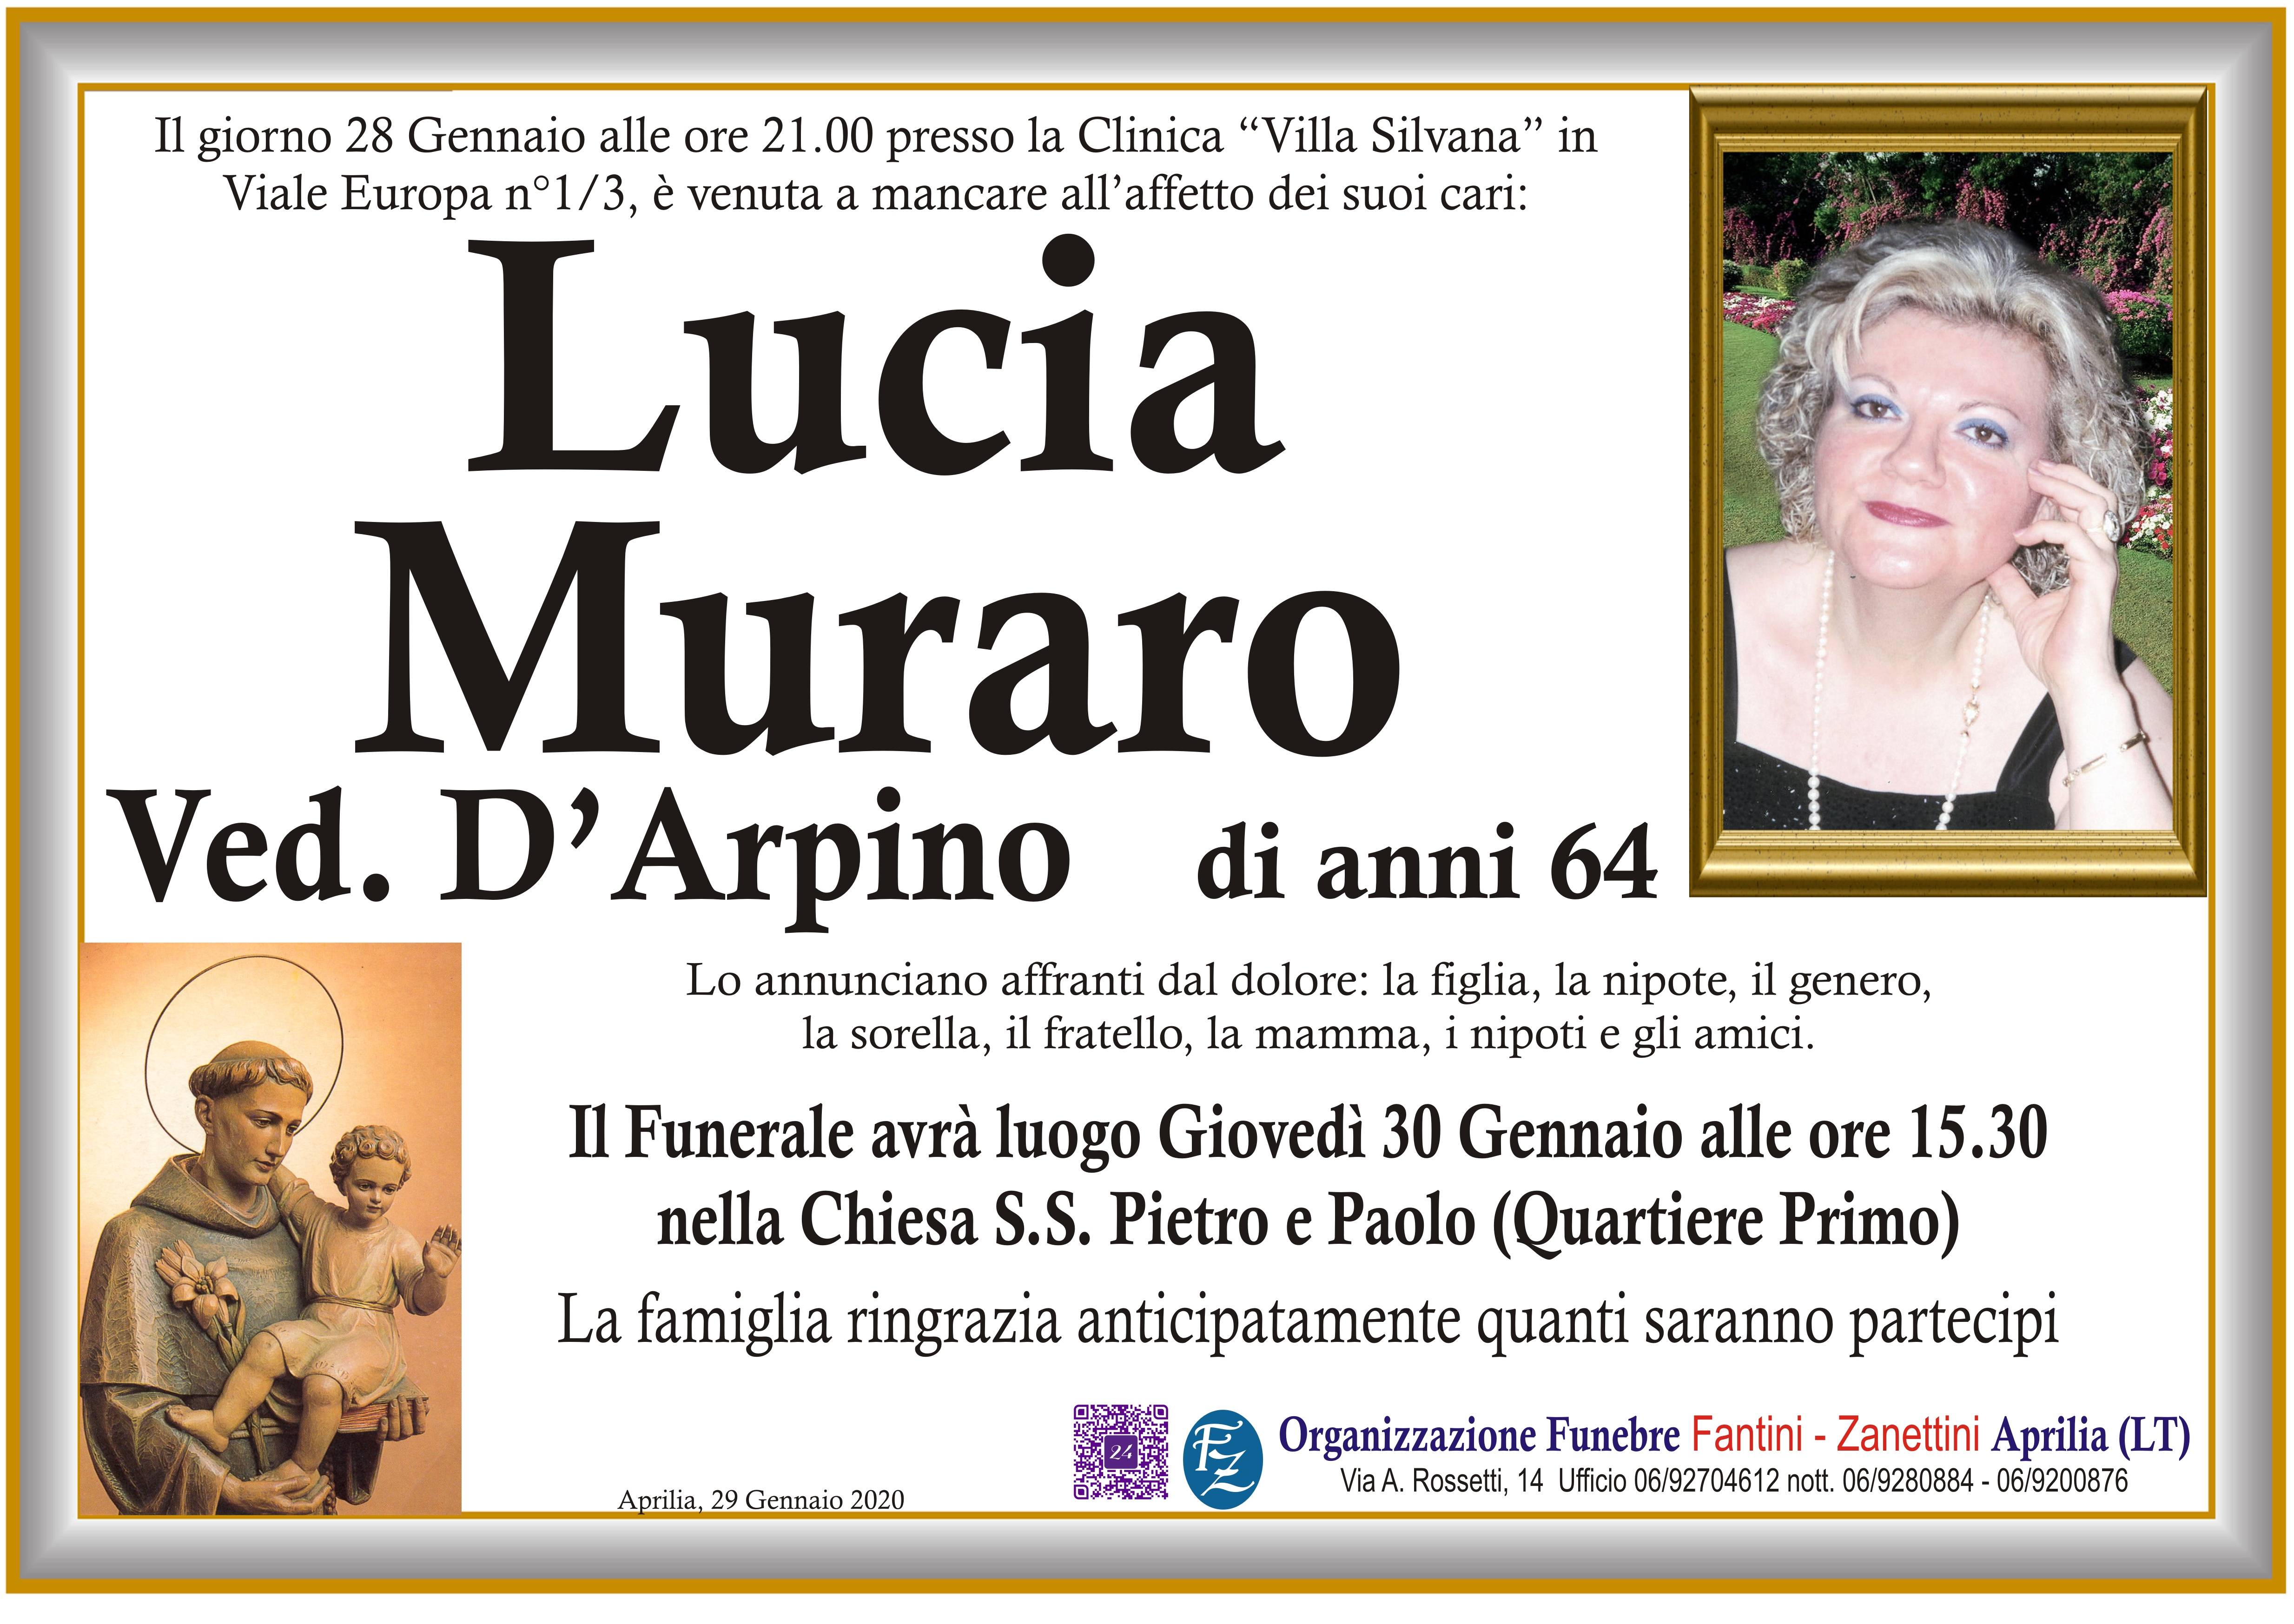 Lucia Muraro